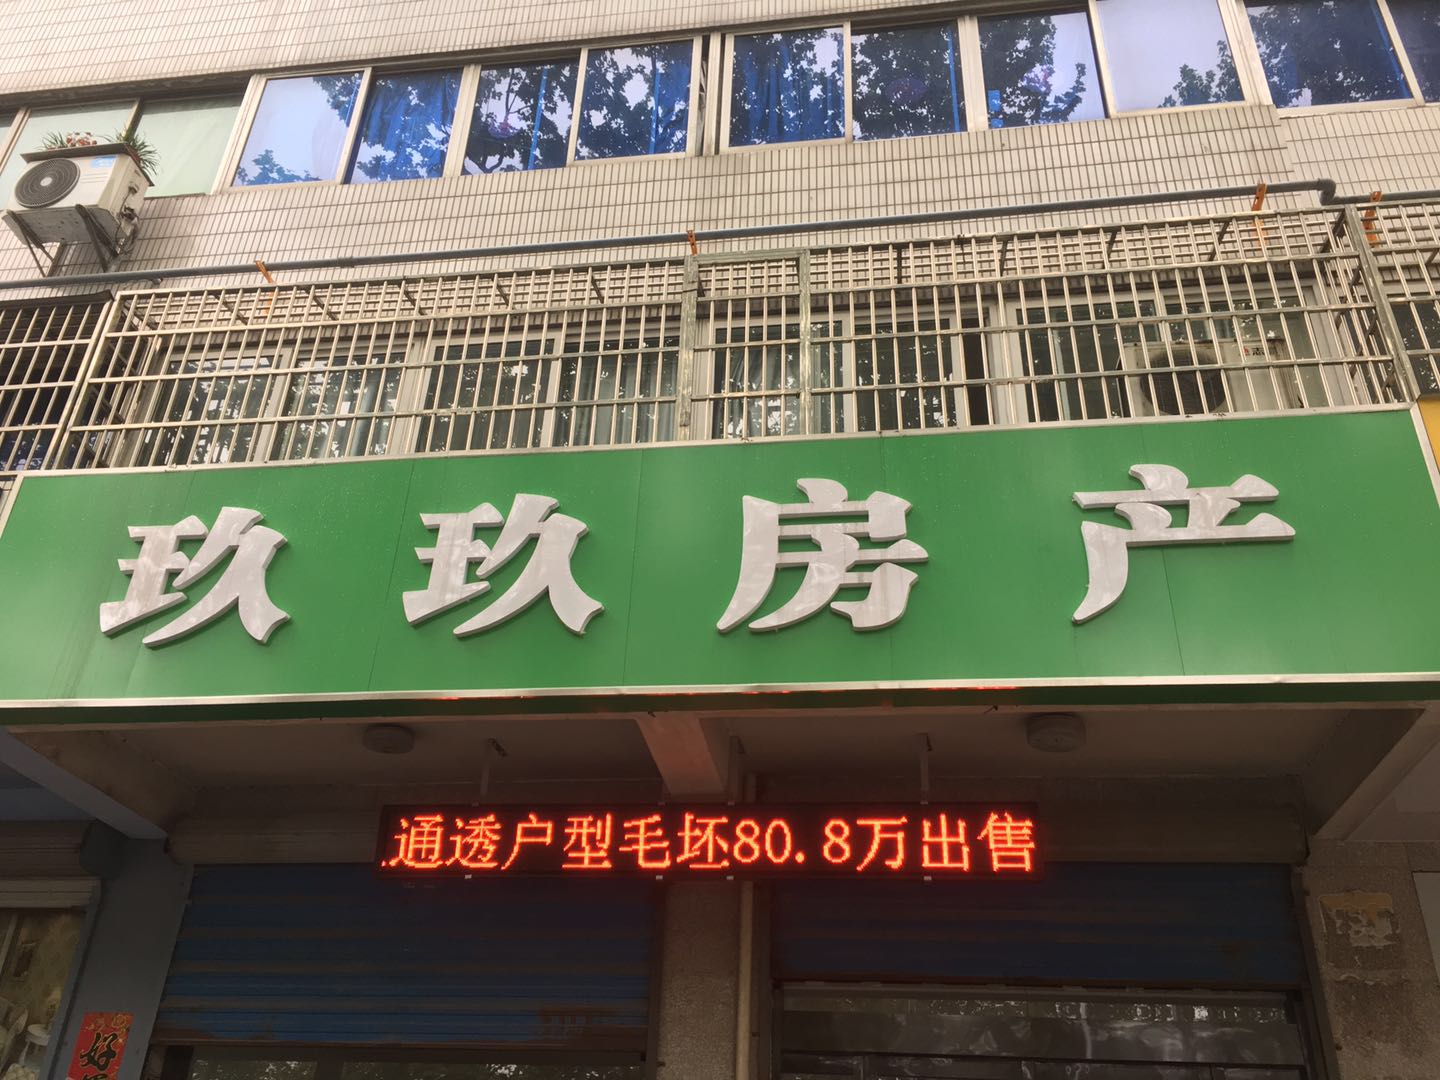 上海房产中介行业进入“战国时代”房源争夺第一希望争夺市场规模